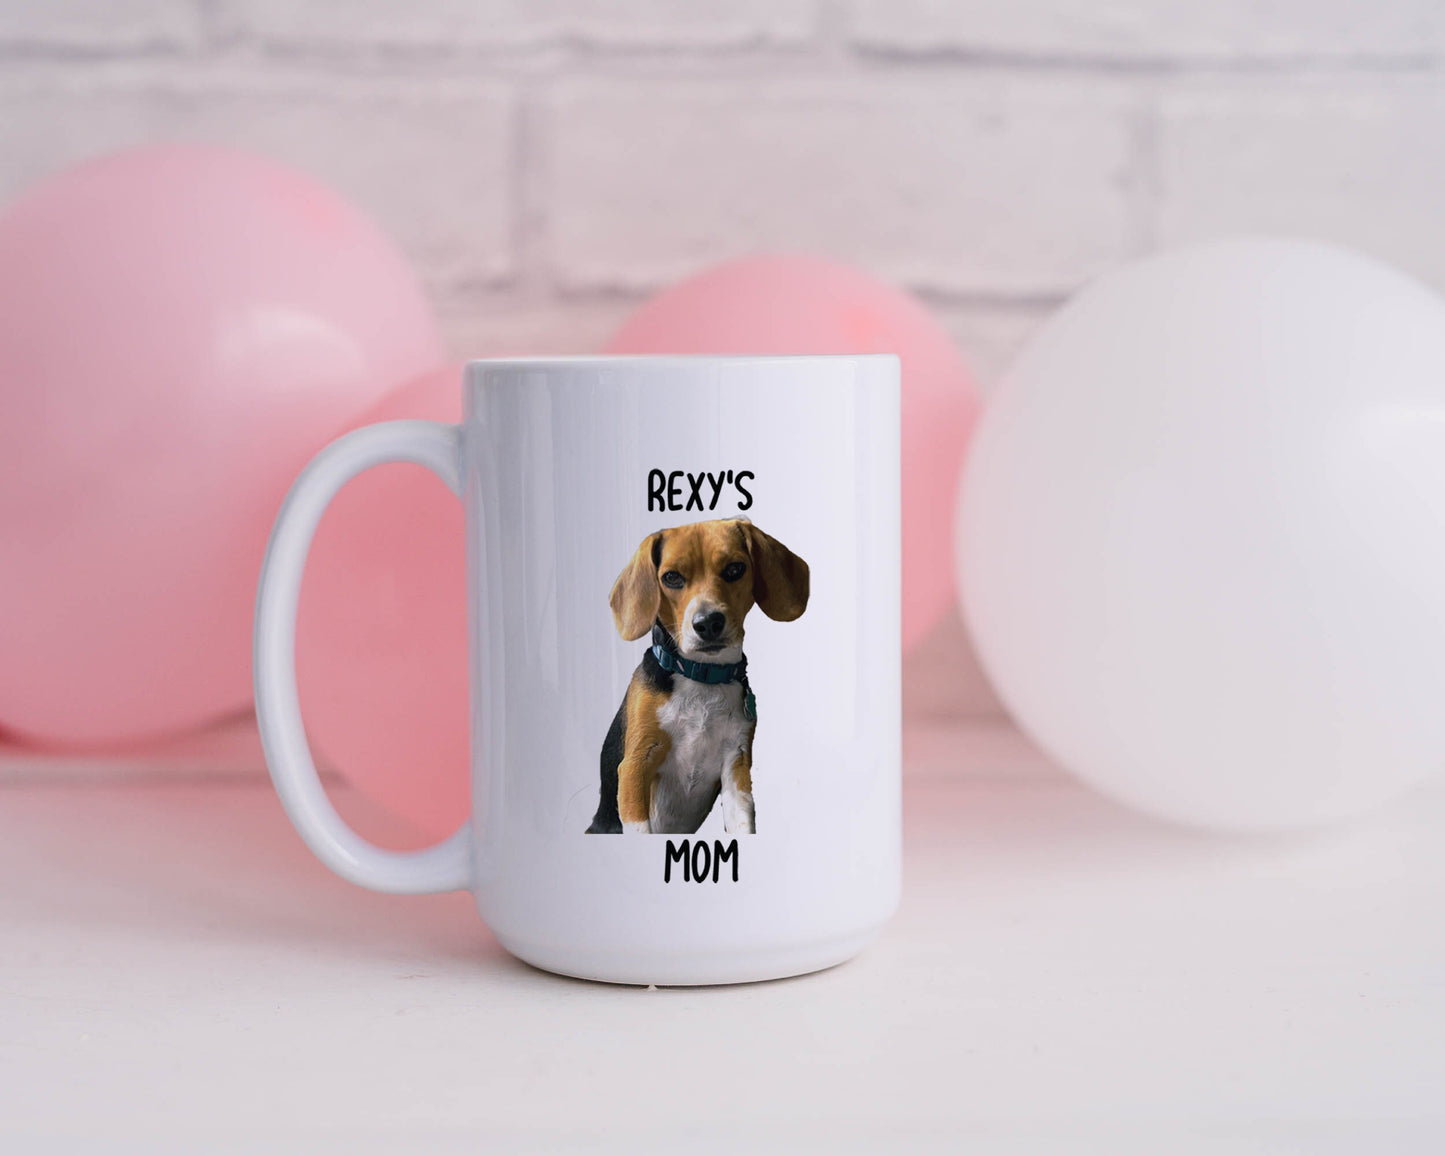 Dog Mug - Dog Face Mug - Dog Mom Mug - Personalized Mug - Gift for Pet Lovers - Cat Mug - Cat Mom Mug - Coffee Mug - Personalized Gift